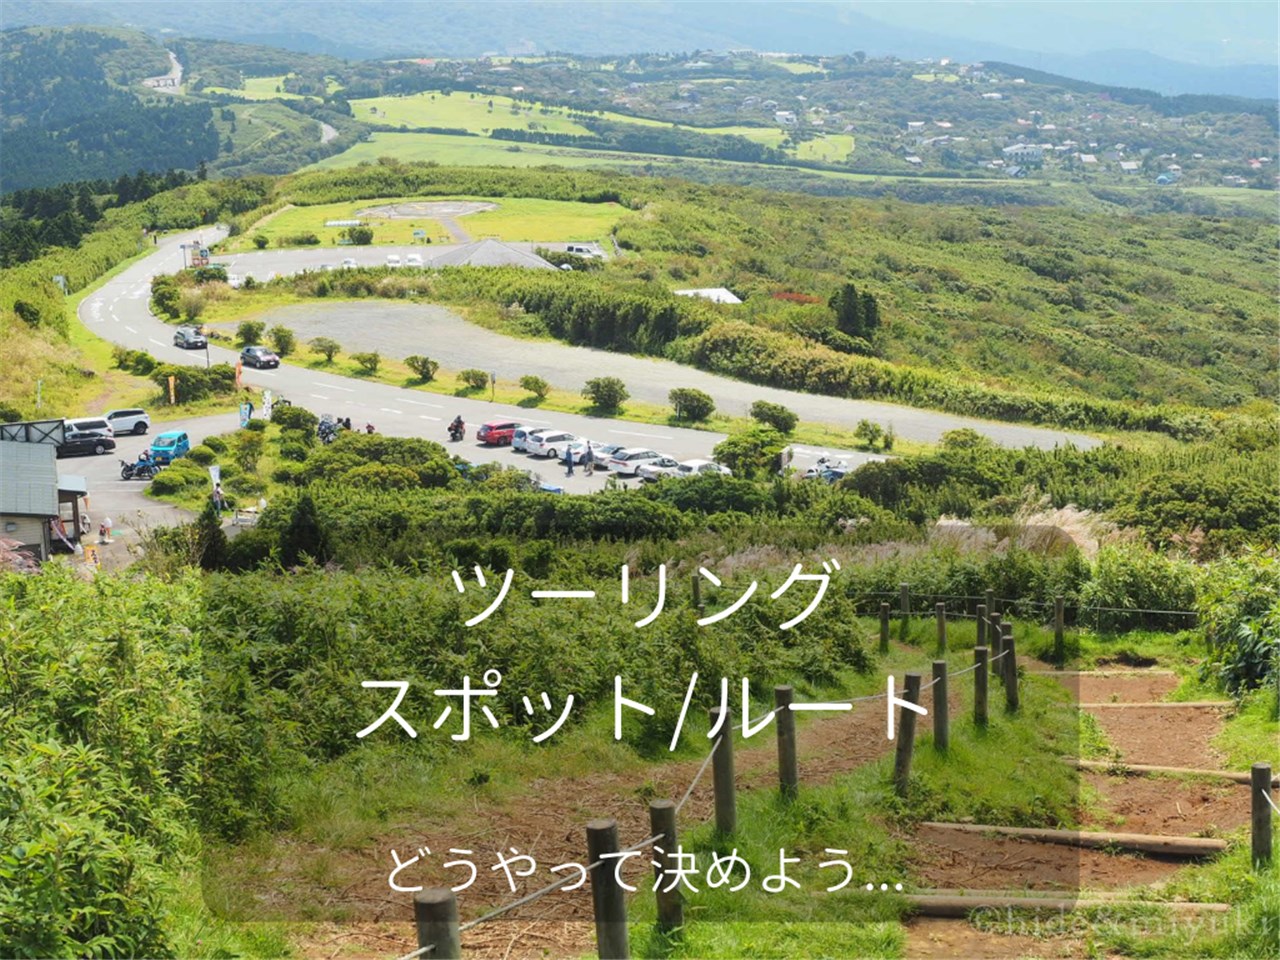 【バイク ツーリング】ツーリングルートの決め方を47都道府県を旅した男が書いていく